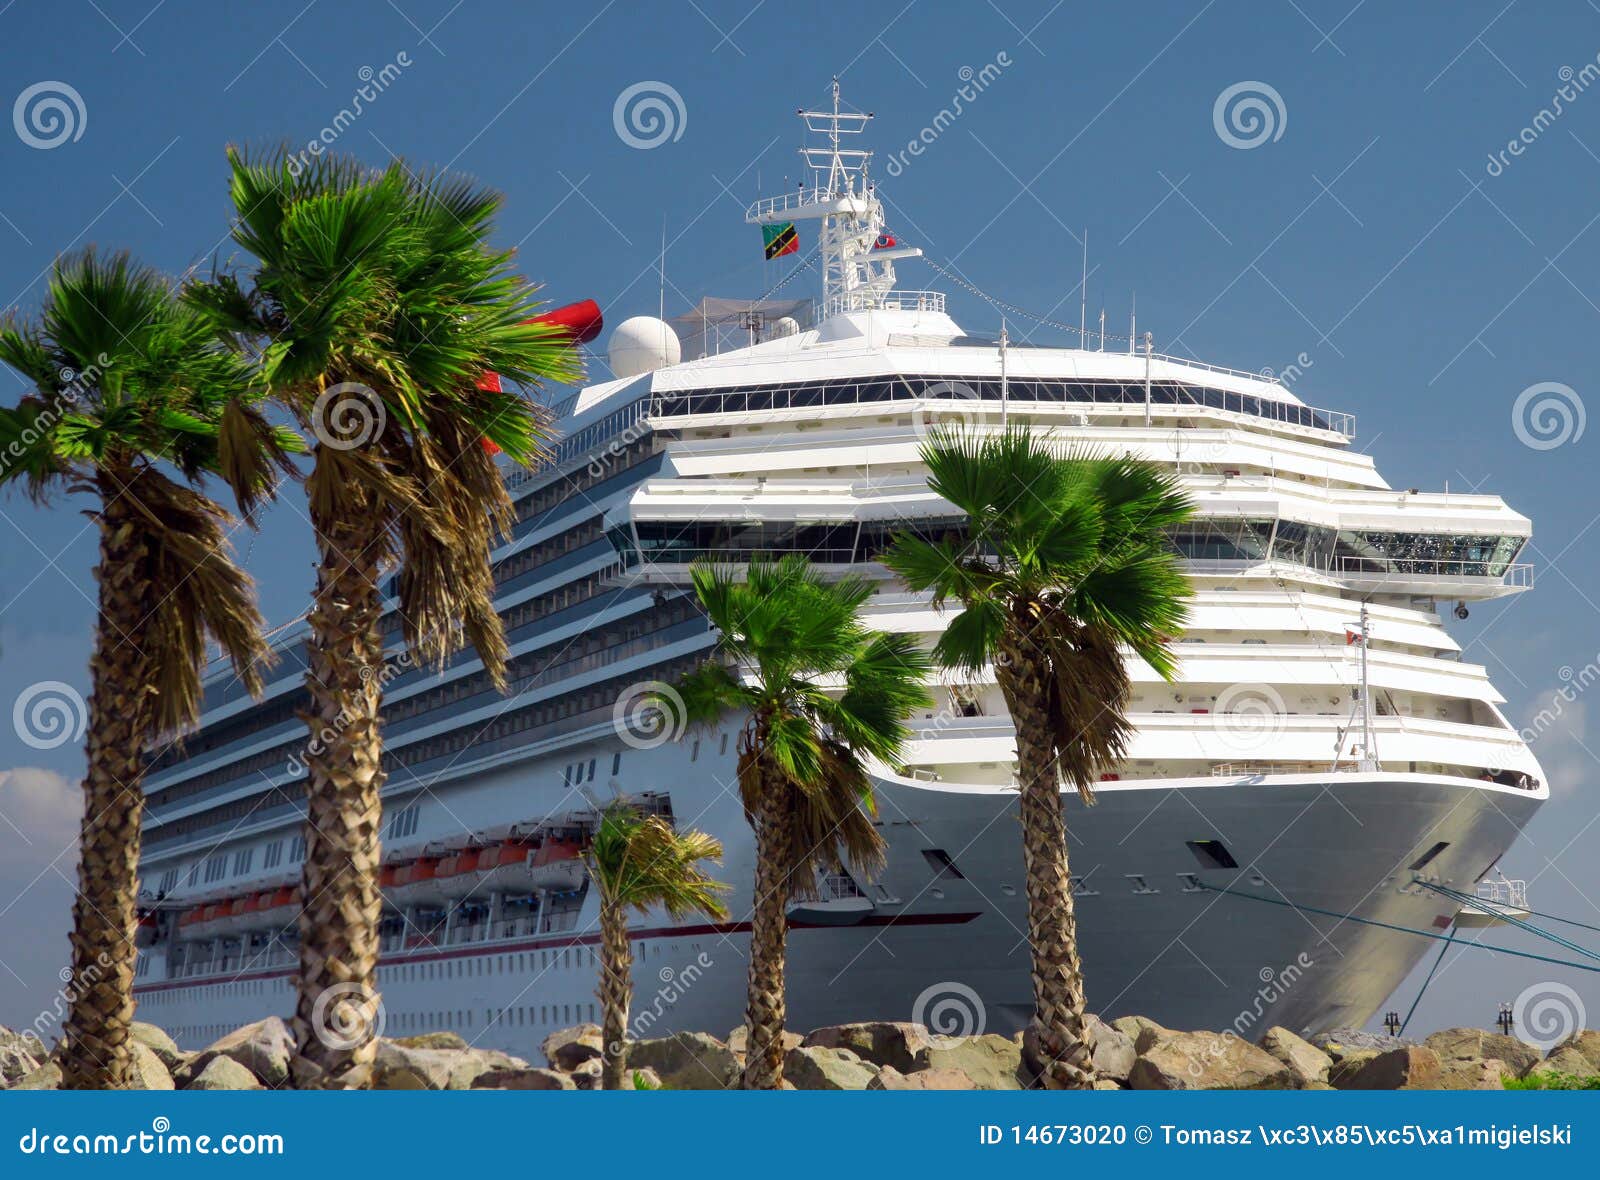 pleasure boat - cruise ship